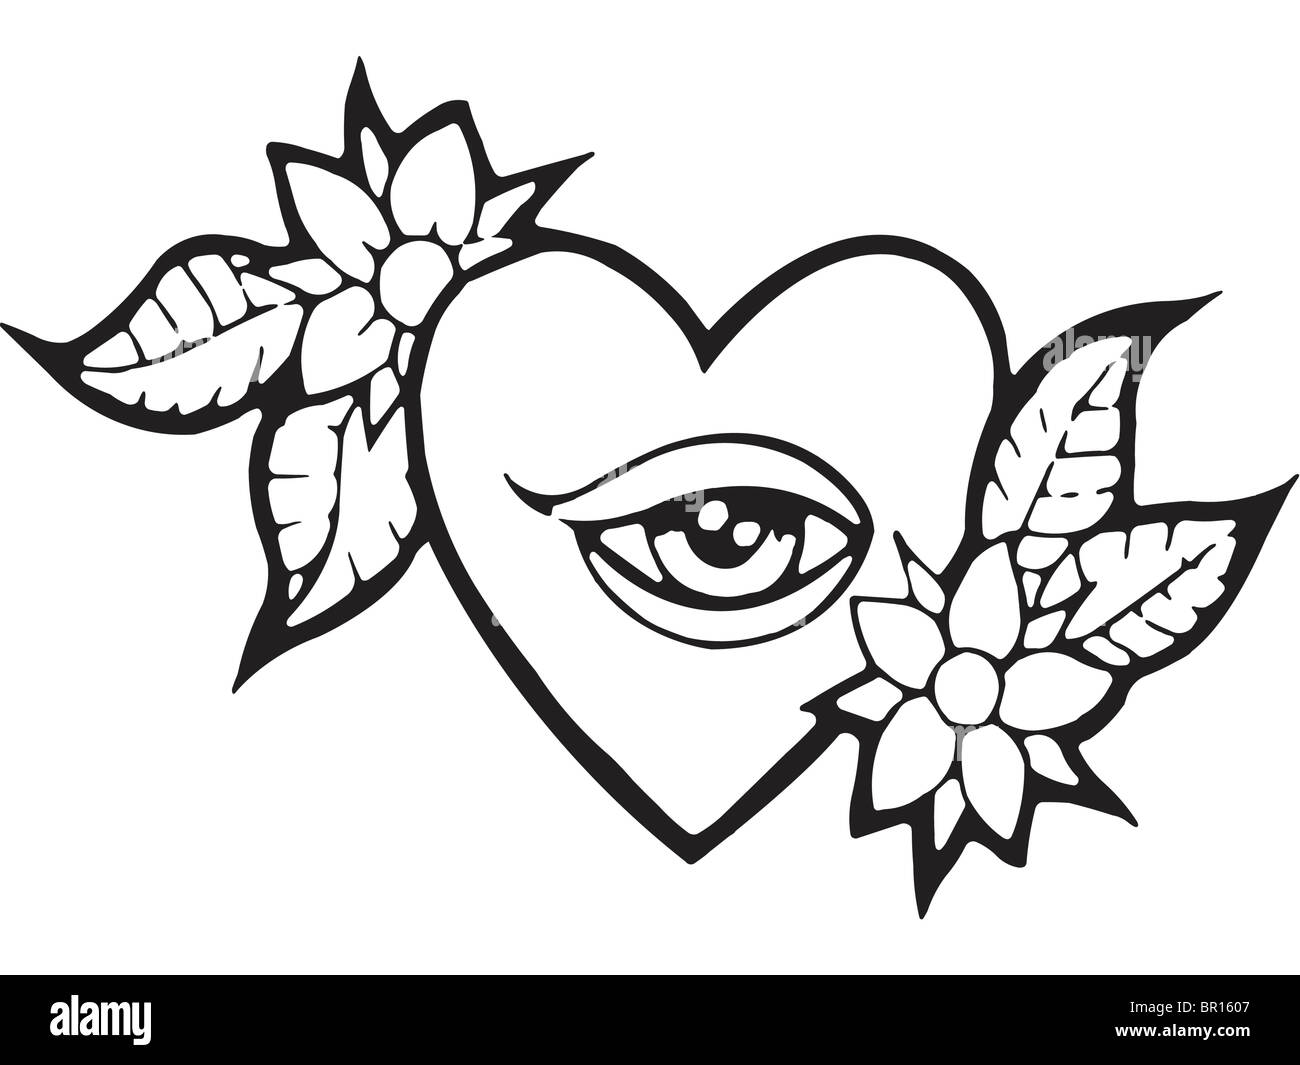 Eine schwarz-weiß Version einer Schablone ein Herz mit Auge und Blumen Stockfoto